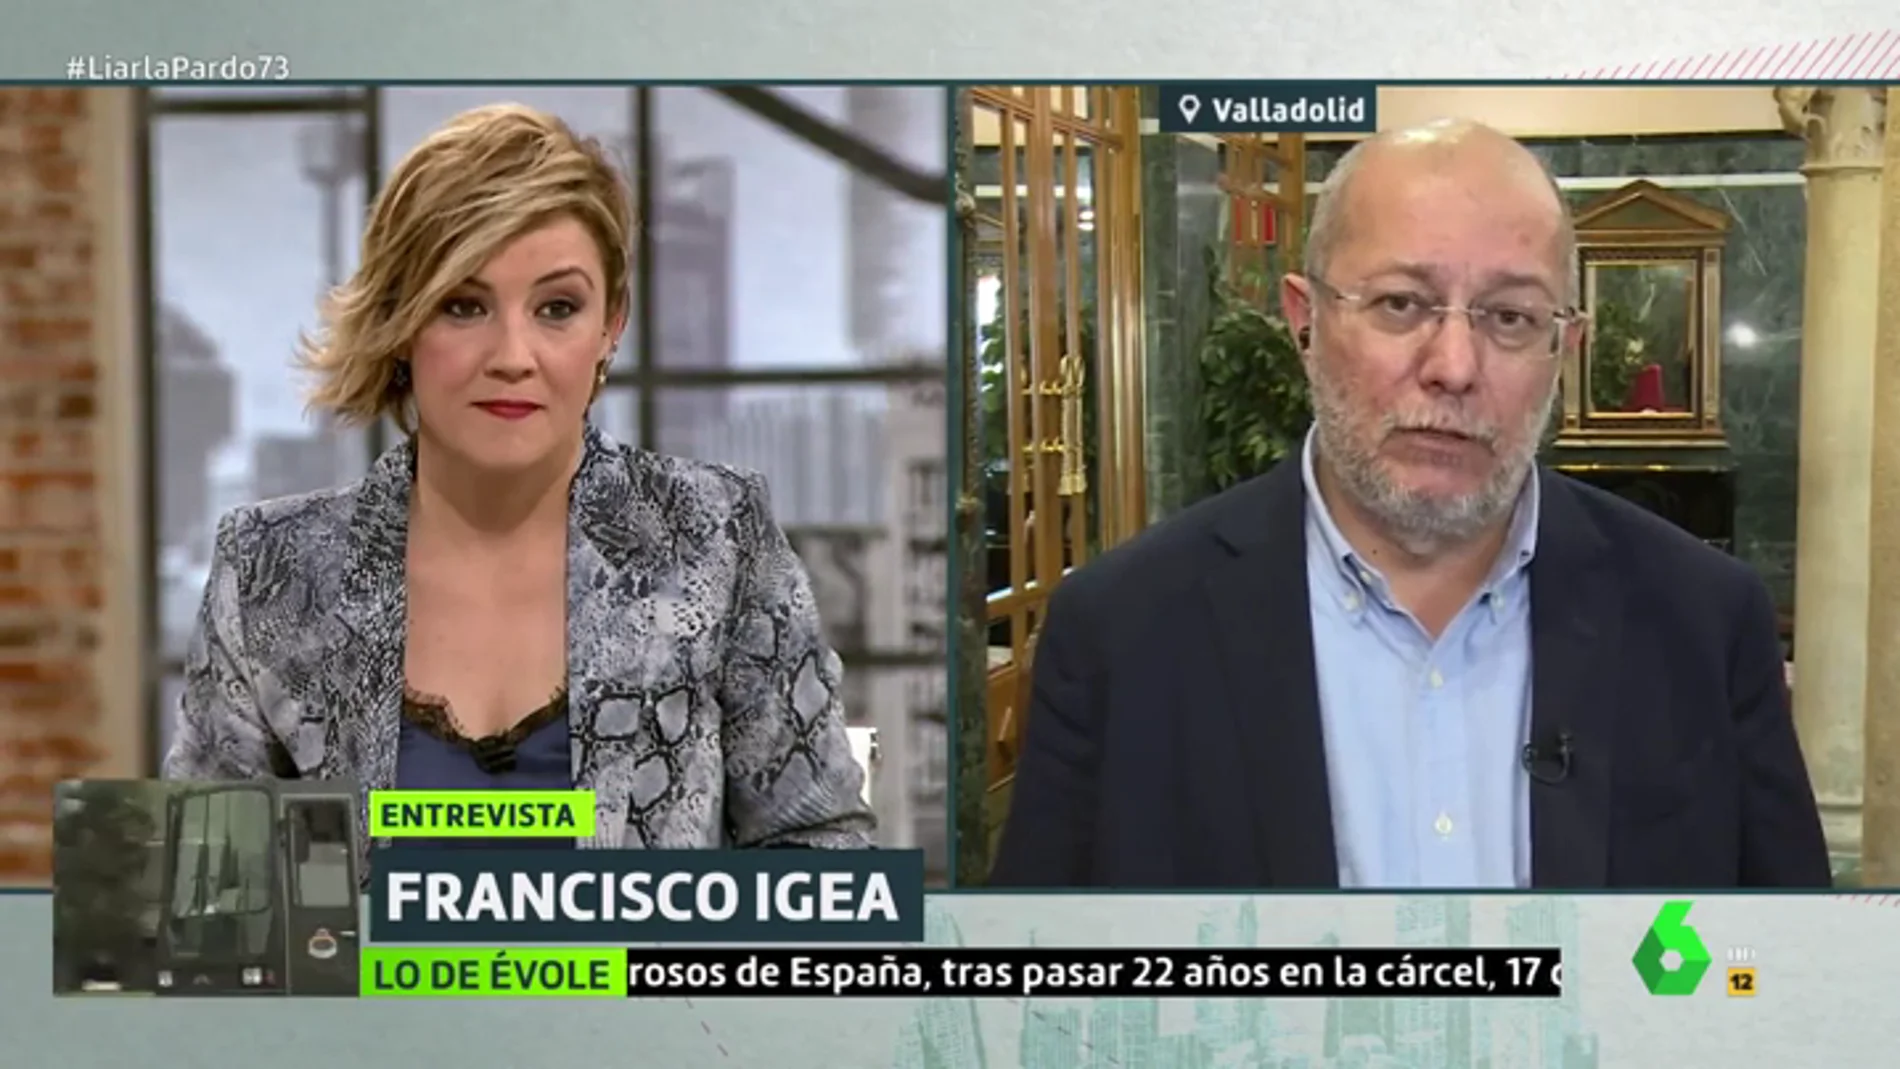 Francisco Igea y su comentada conversación con Inés Arrimadas: "Se han cometido errores. Estoy esperando a que rectifique"